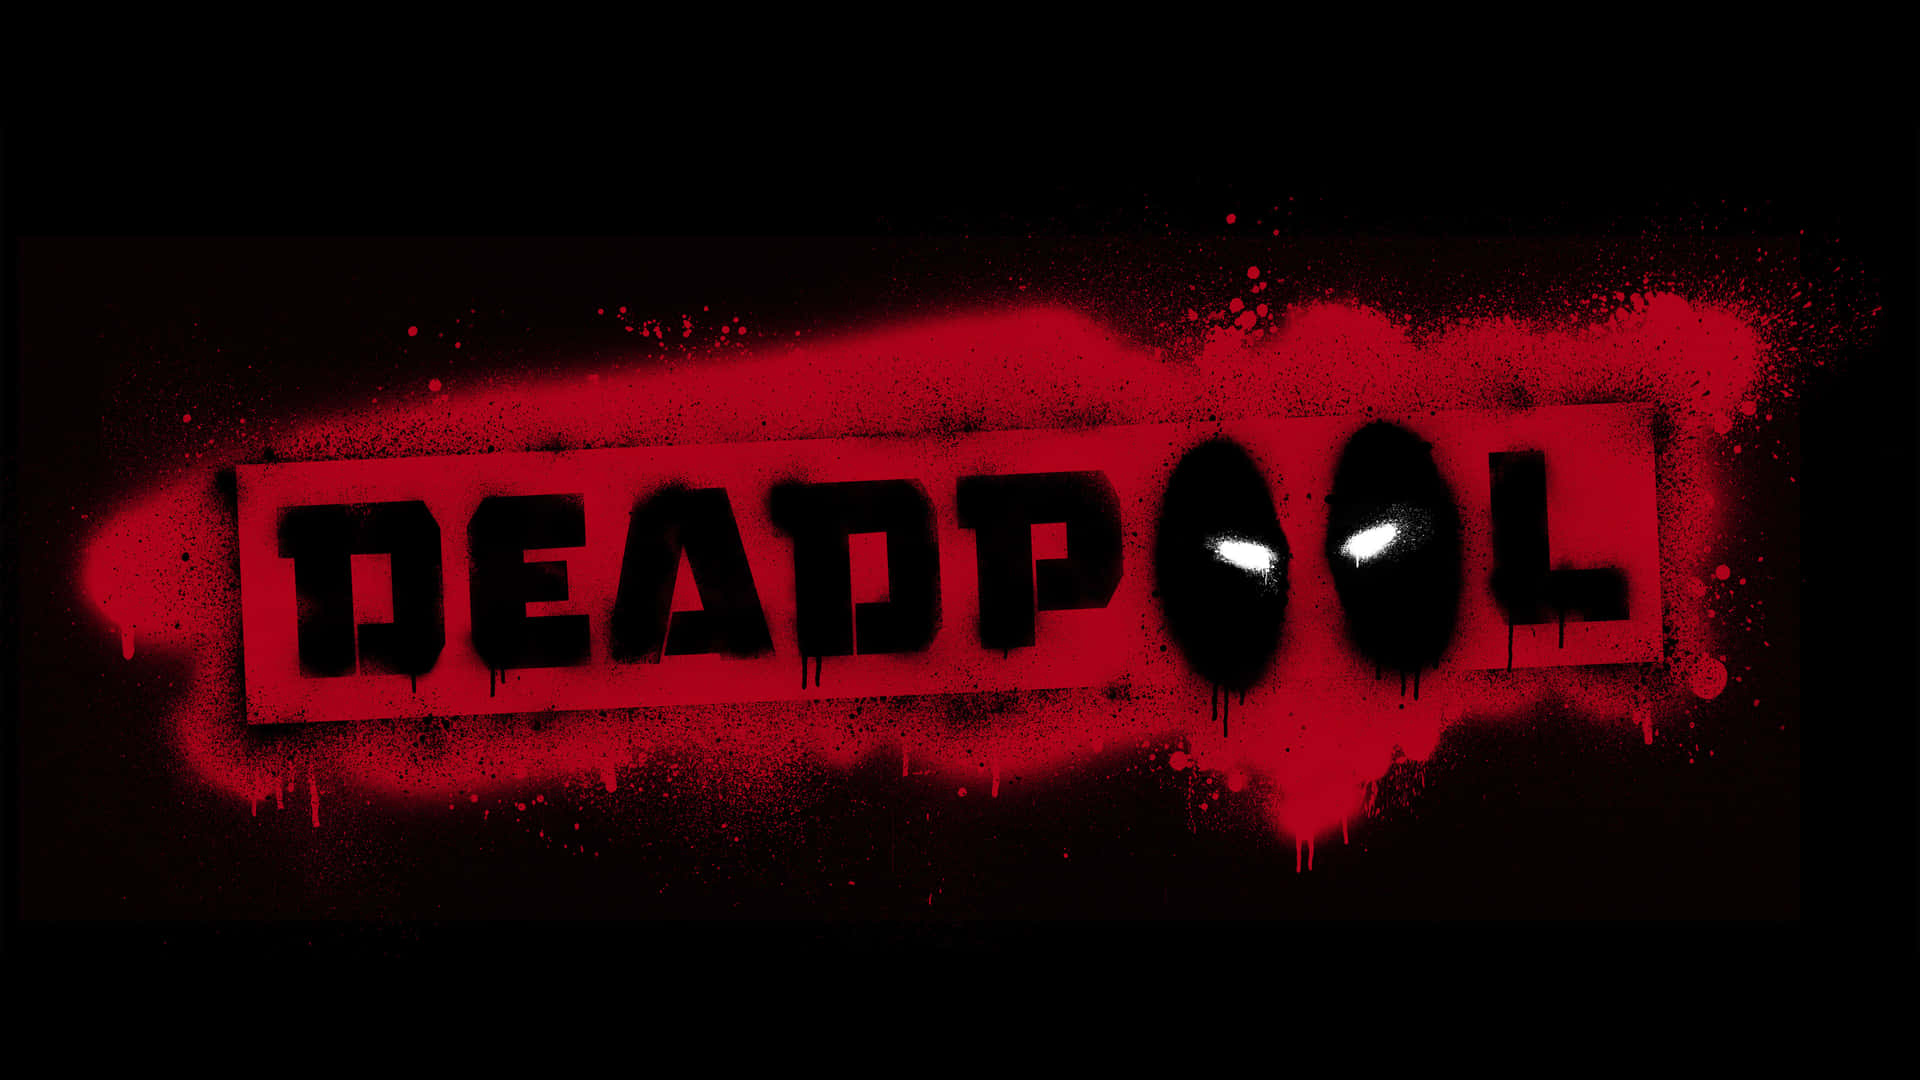 Officielllogotyp För Marvel-karaktären Deadpool. Wallpaper